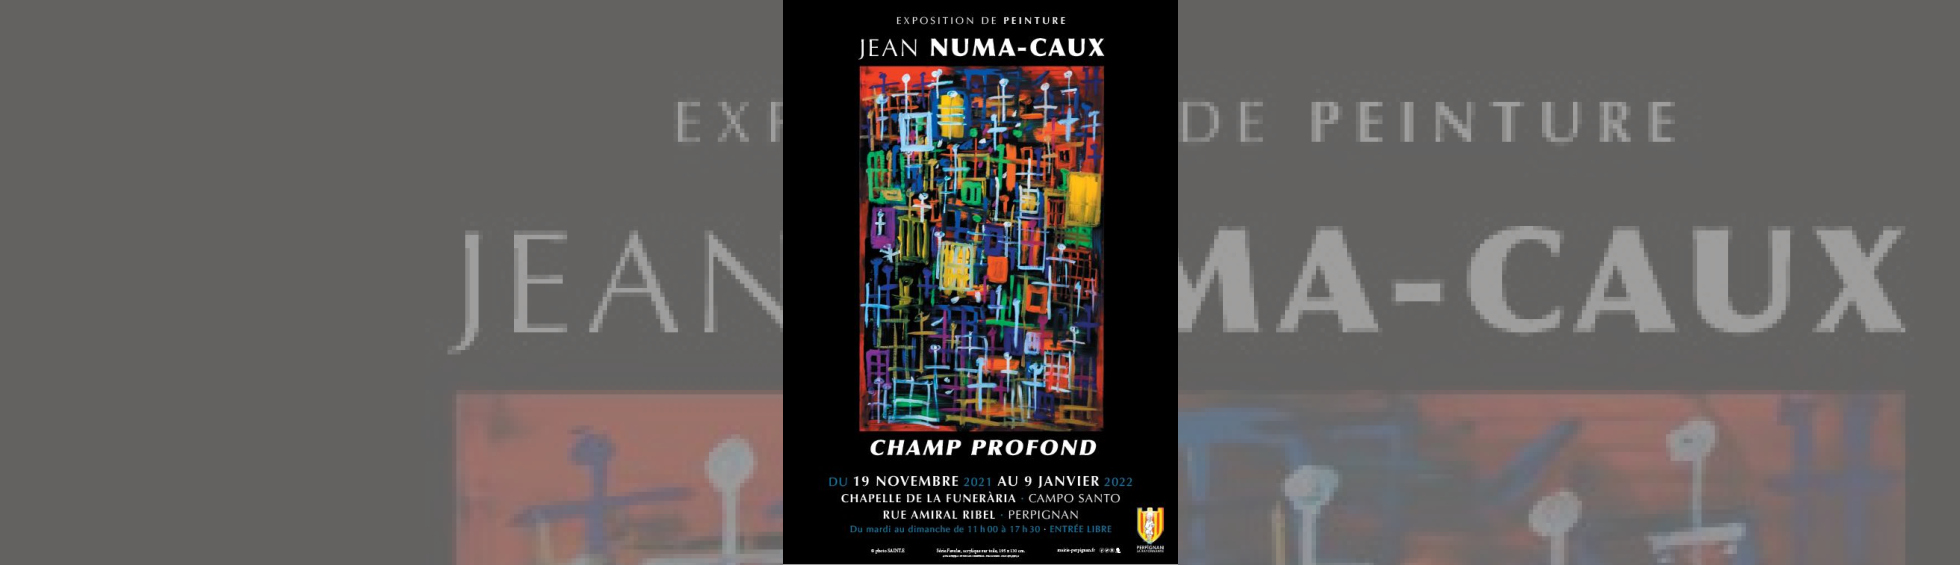 Affiche exposition Numa Caux " Champ profond"